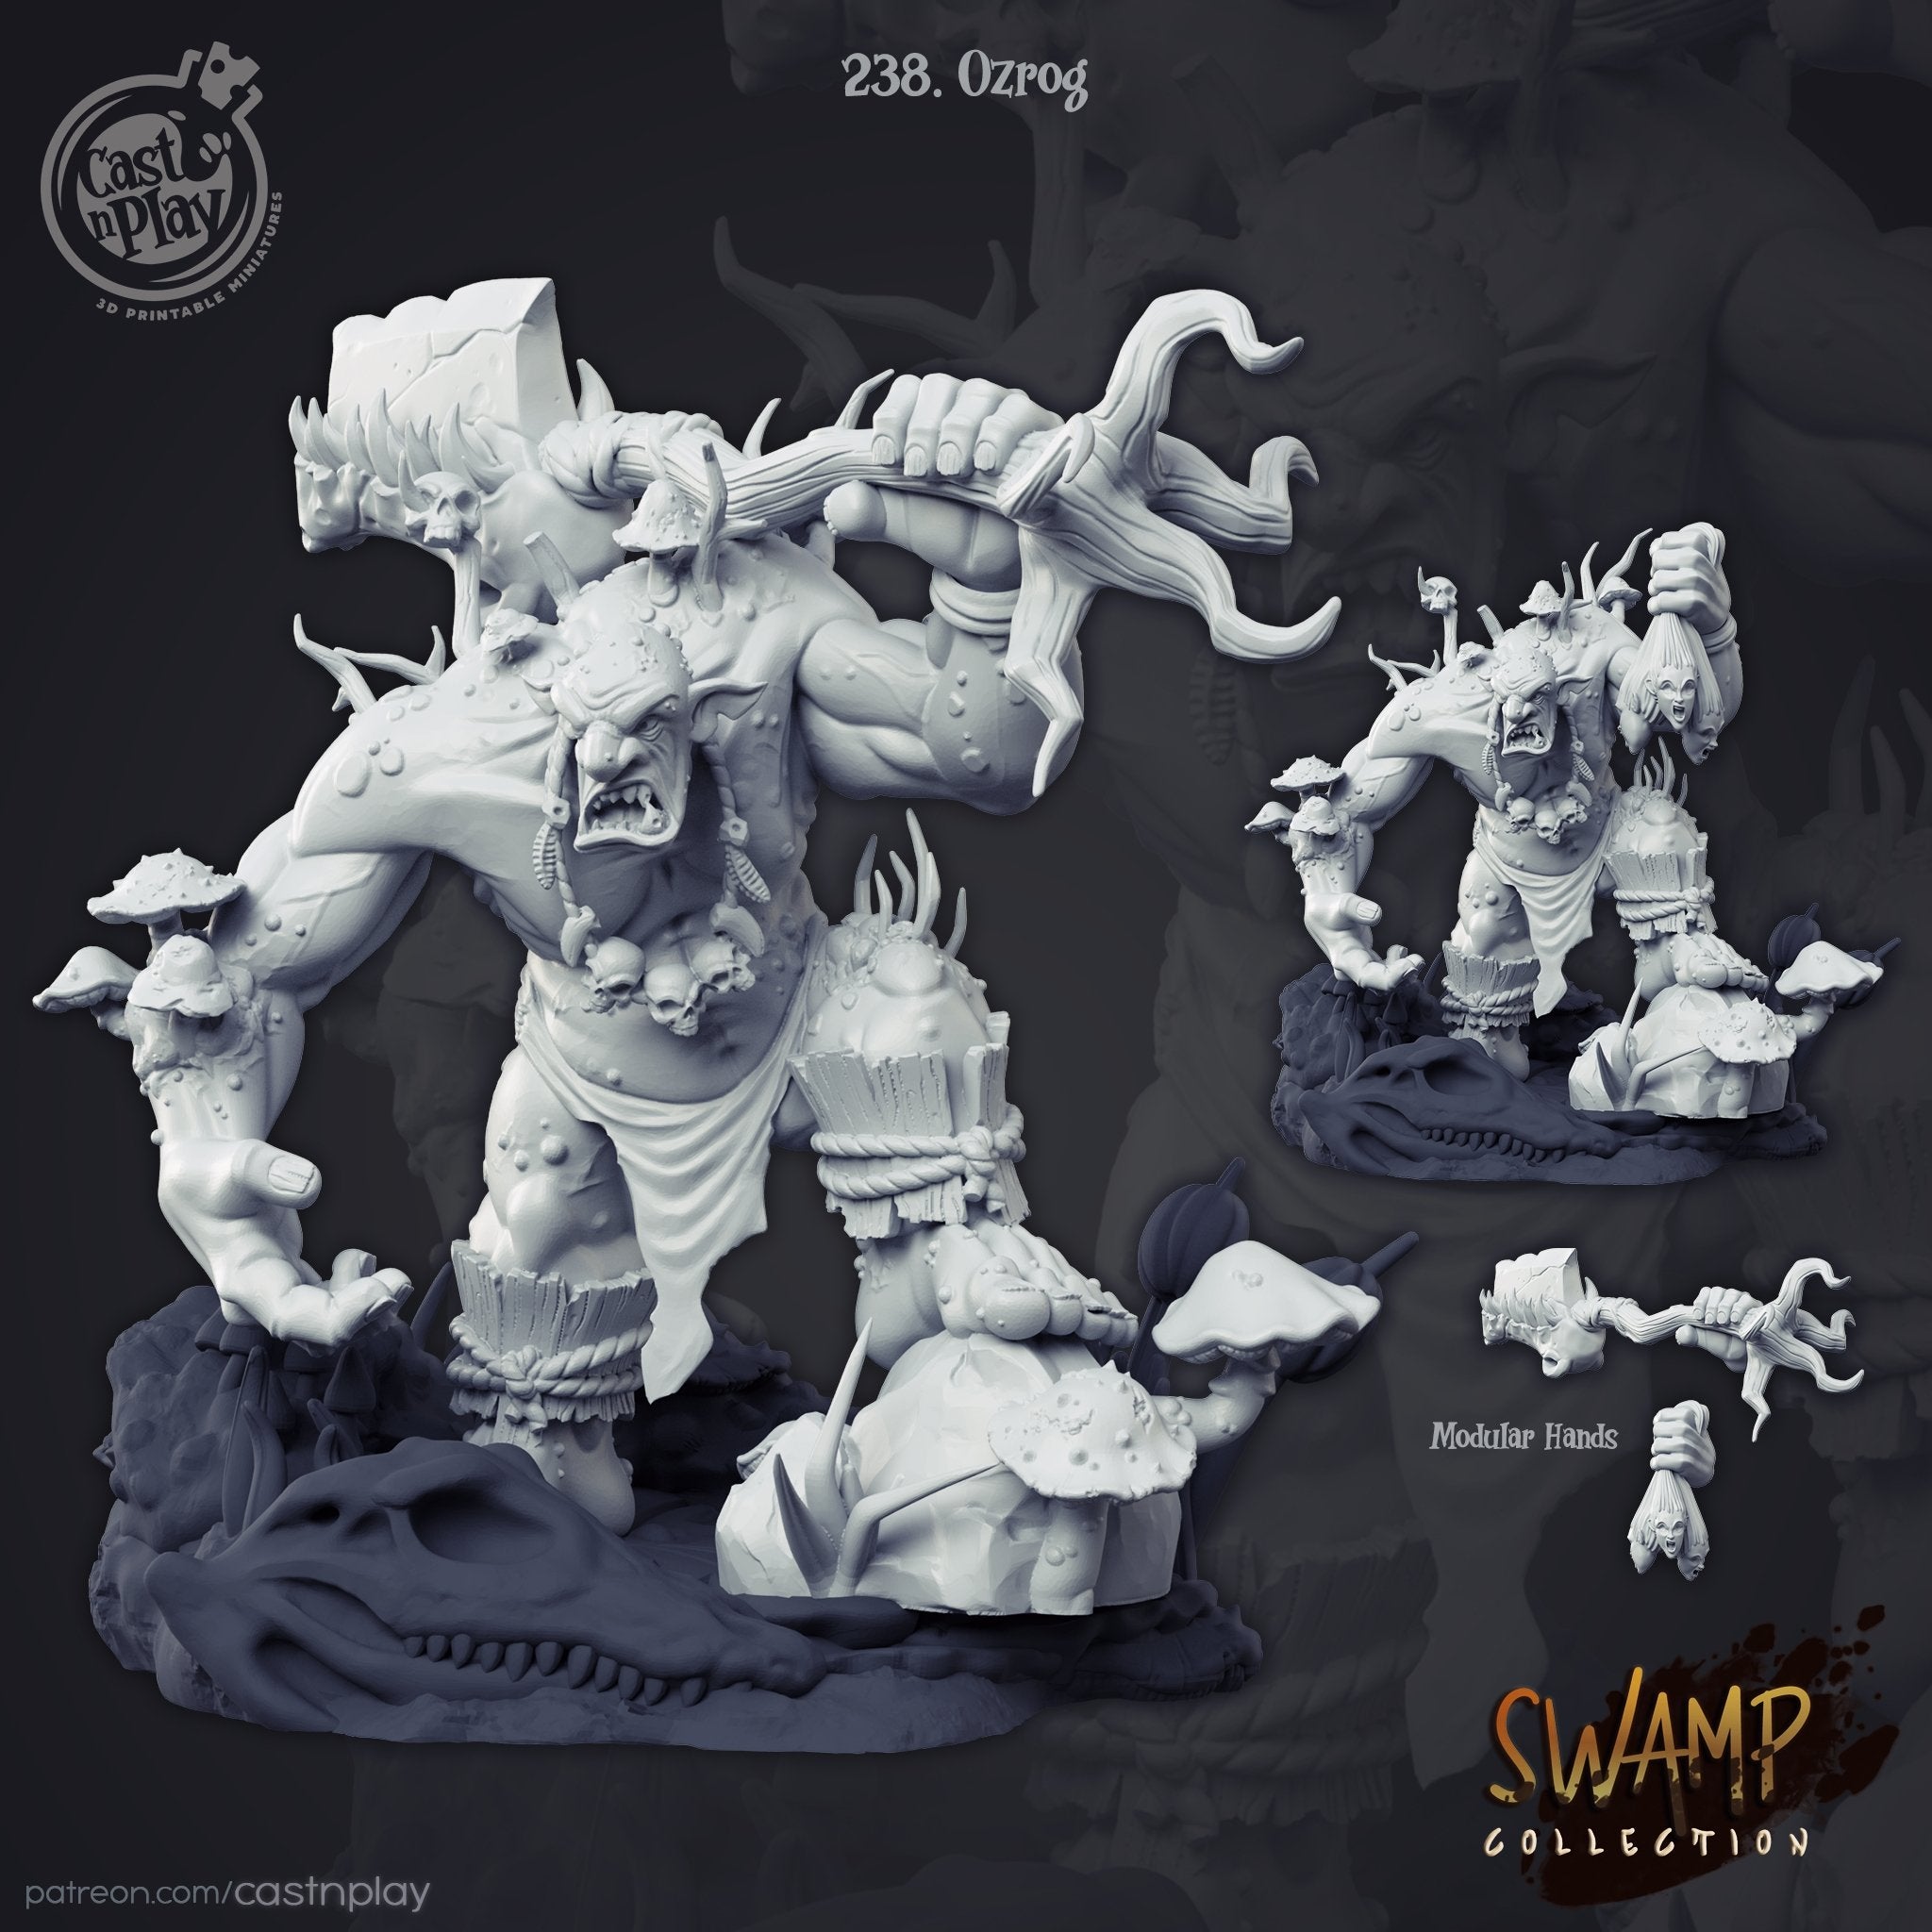 Ozrog The Swamp Troll - The Printable Dragon